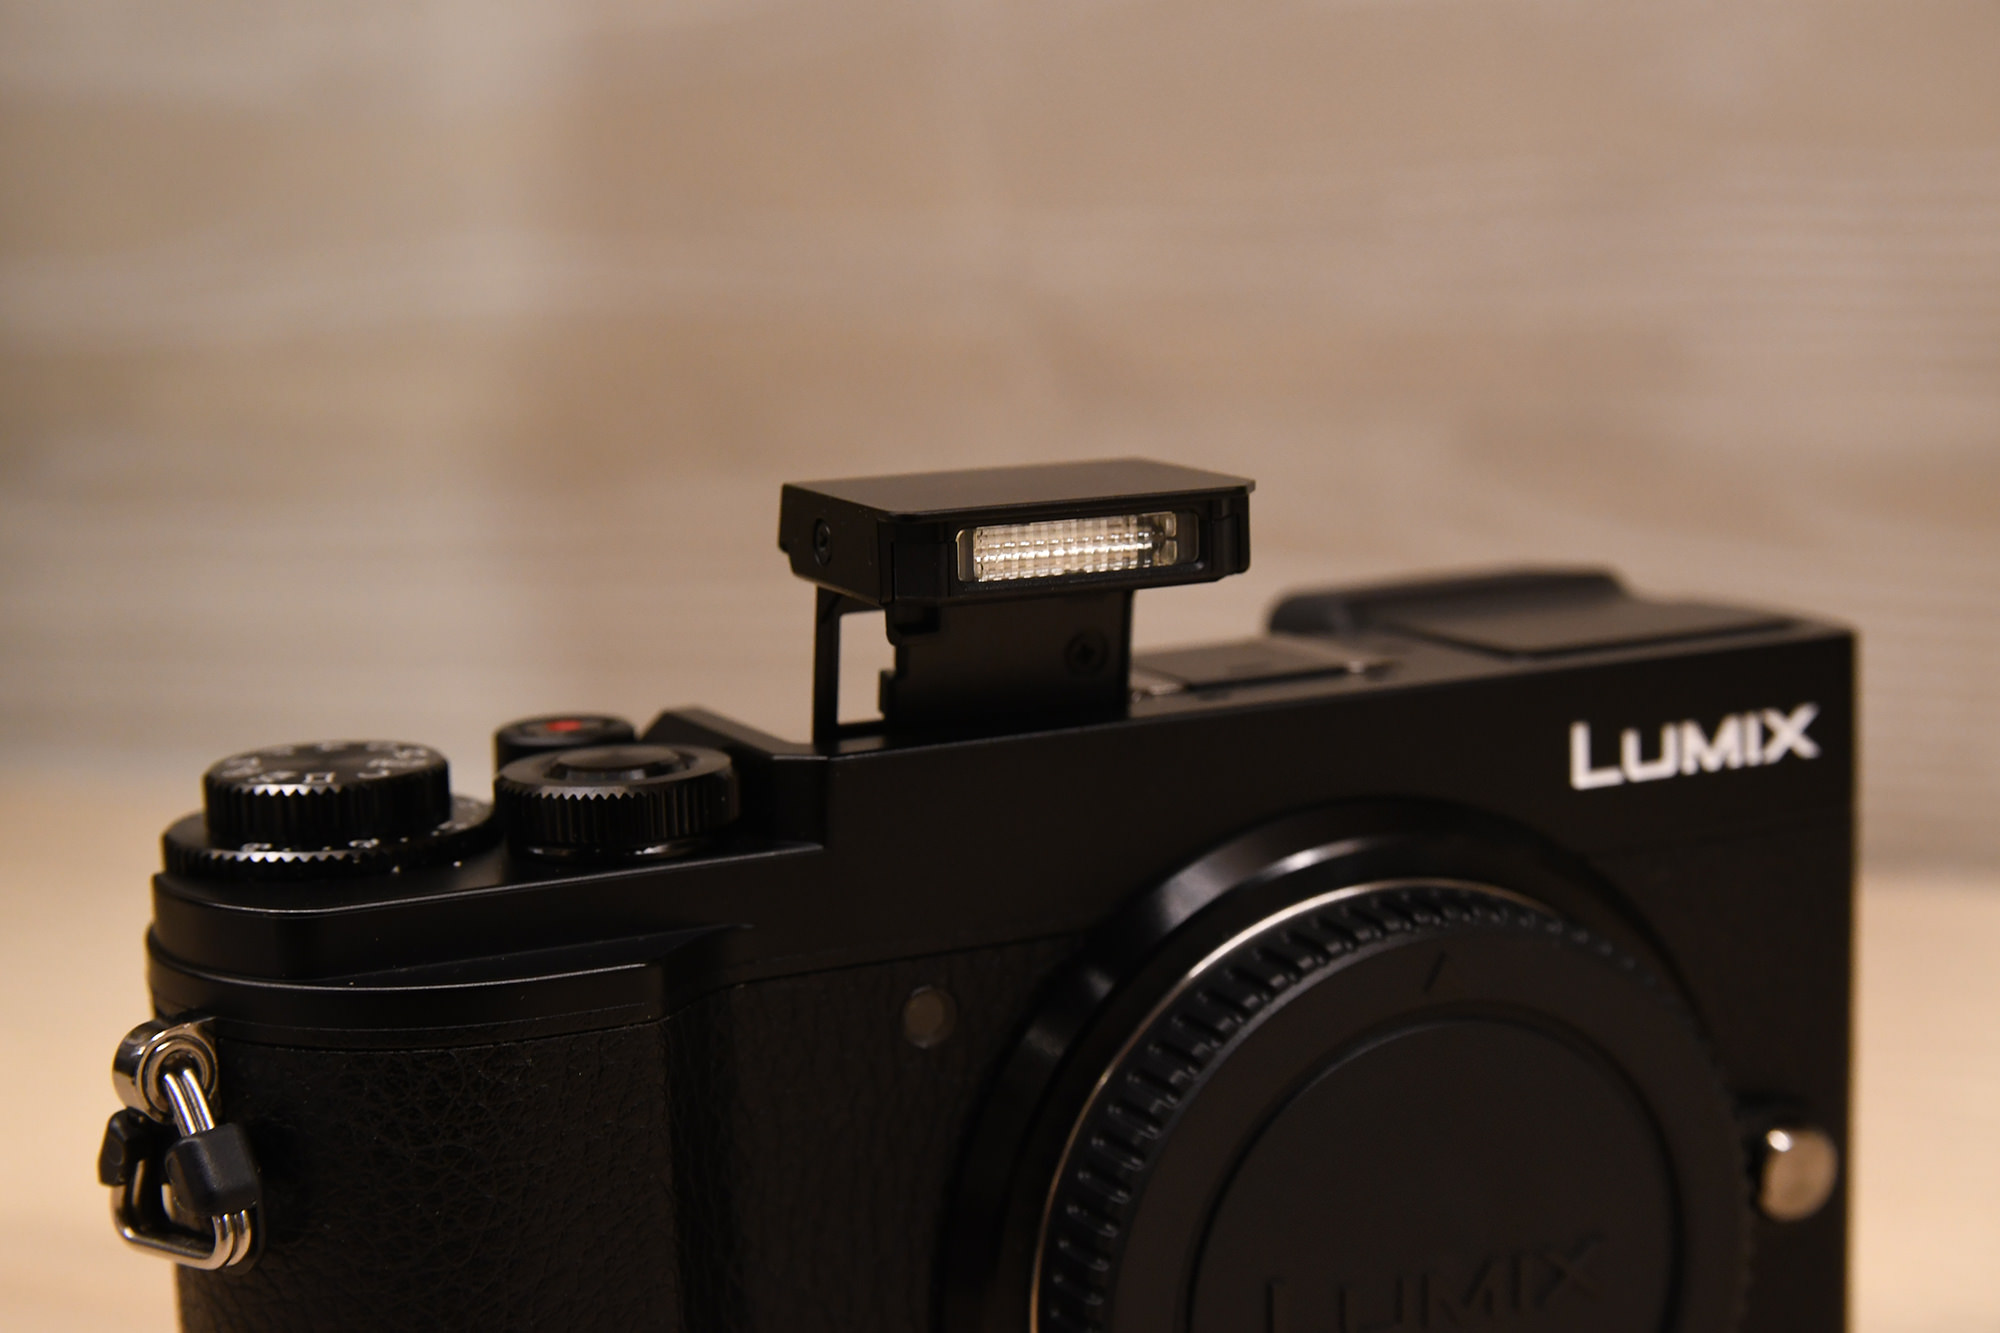 評測》經典微單Panasonic LUMIX GX9 適合攝影愛好者、操作性能完美- 響生活影像工作室R Life Studio